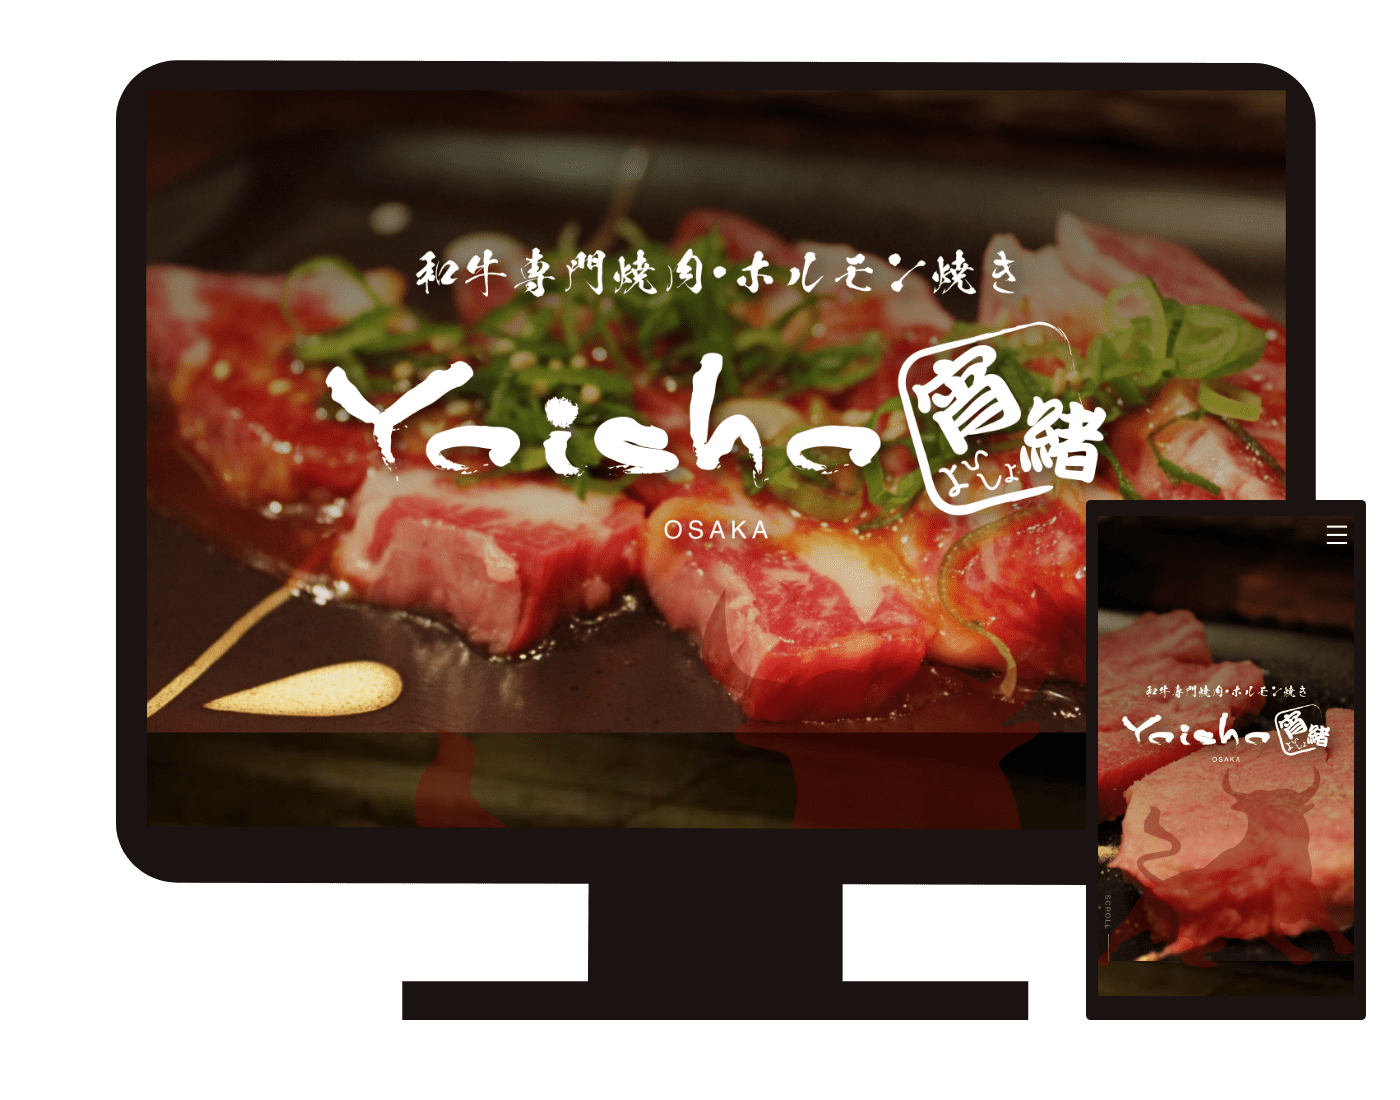 
焼肉ホルモン宵緒-Yoisho